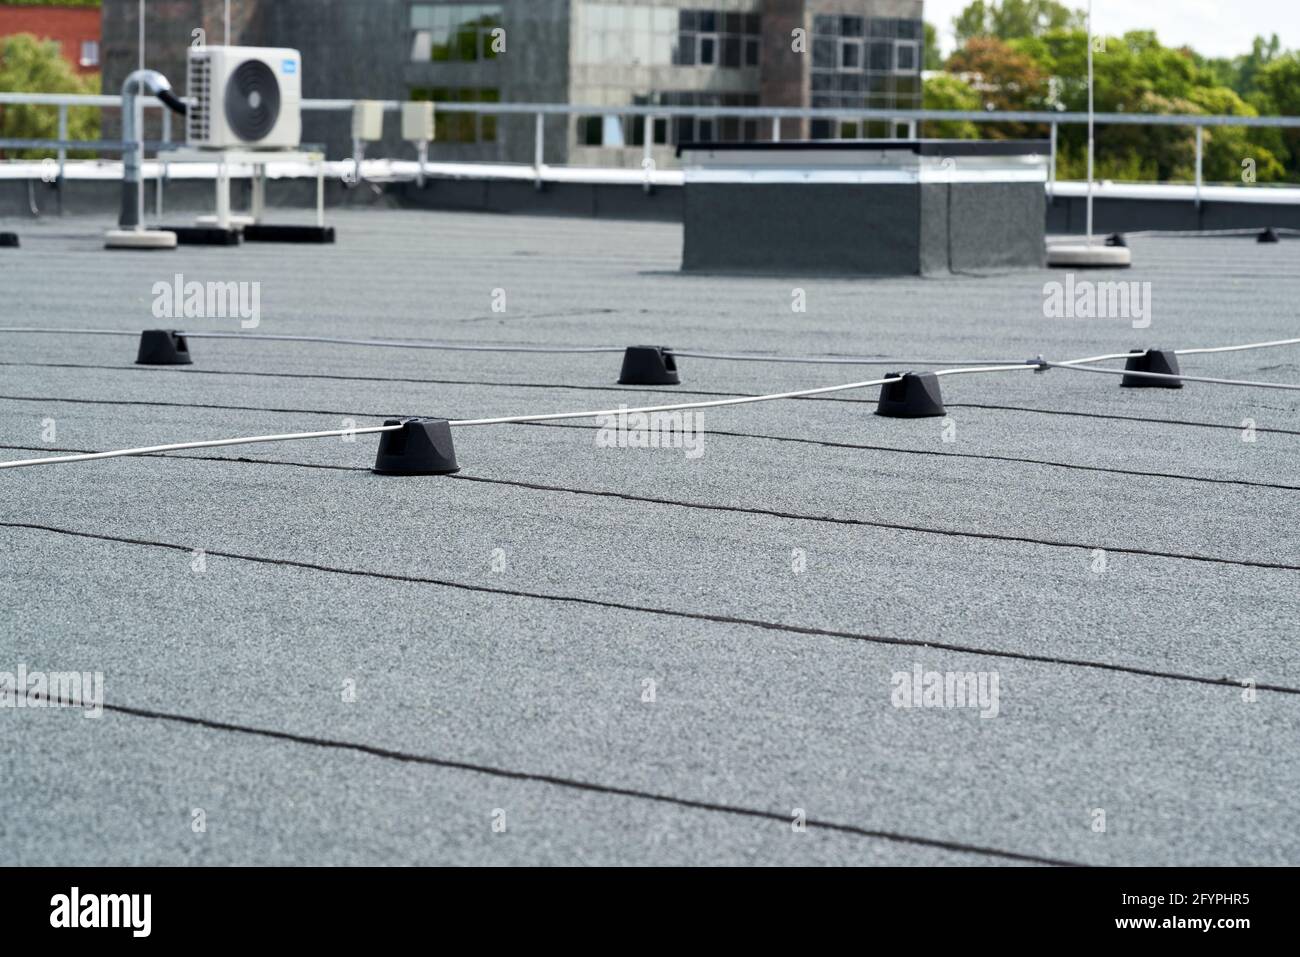 Copertura protettiva per tetti piani con membrana in bitume per impermeabilizzazione Foto Stock